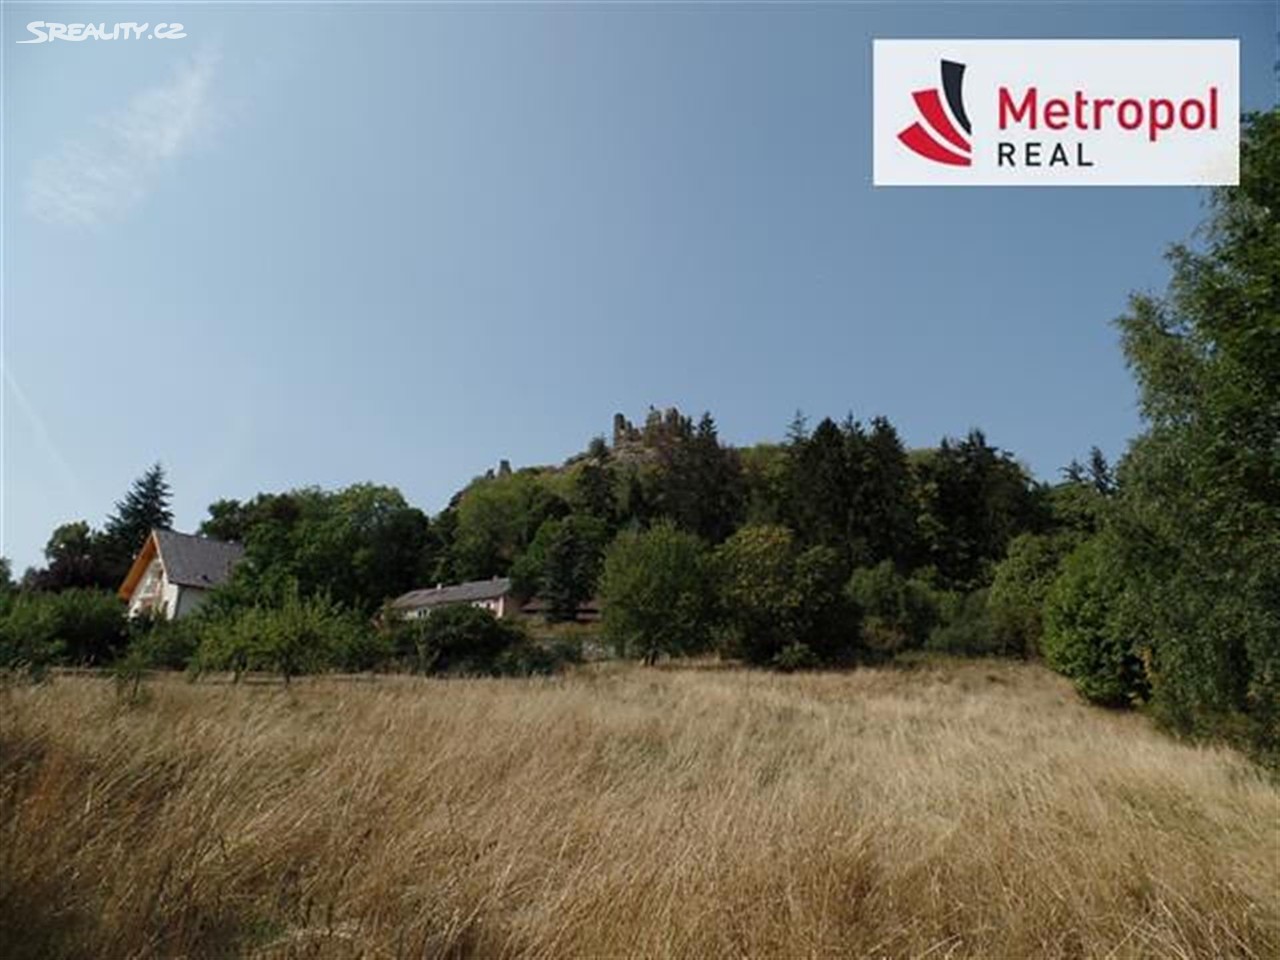 Prodej  stavebního pozemku 4 309 m², Andělská Hora - část obce Andělská Hora, okres Karlovy Vary